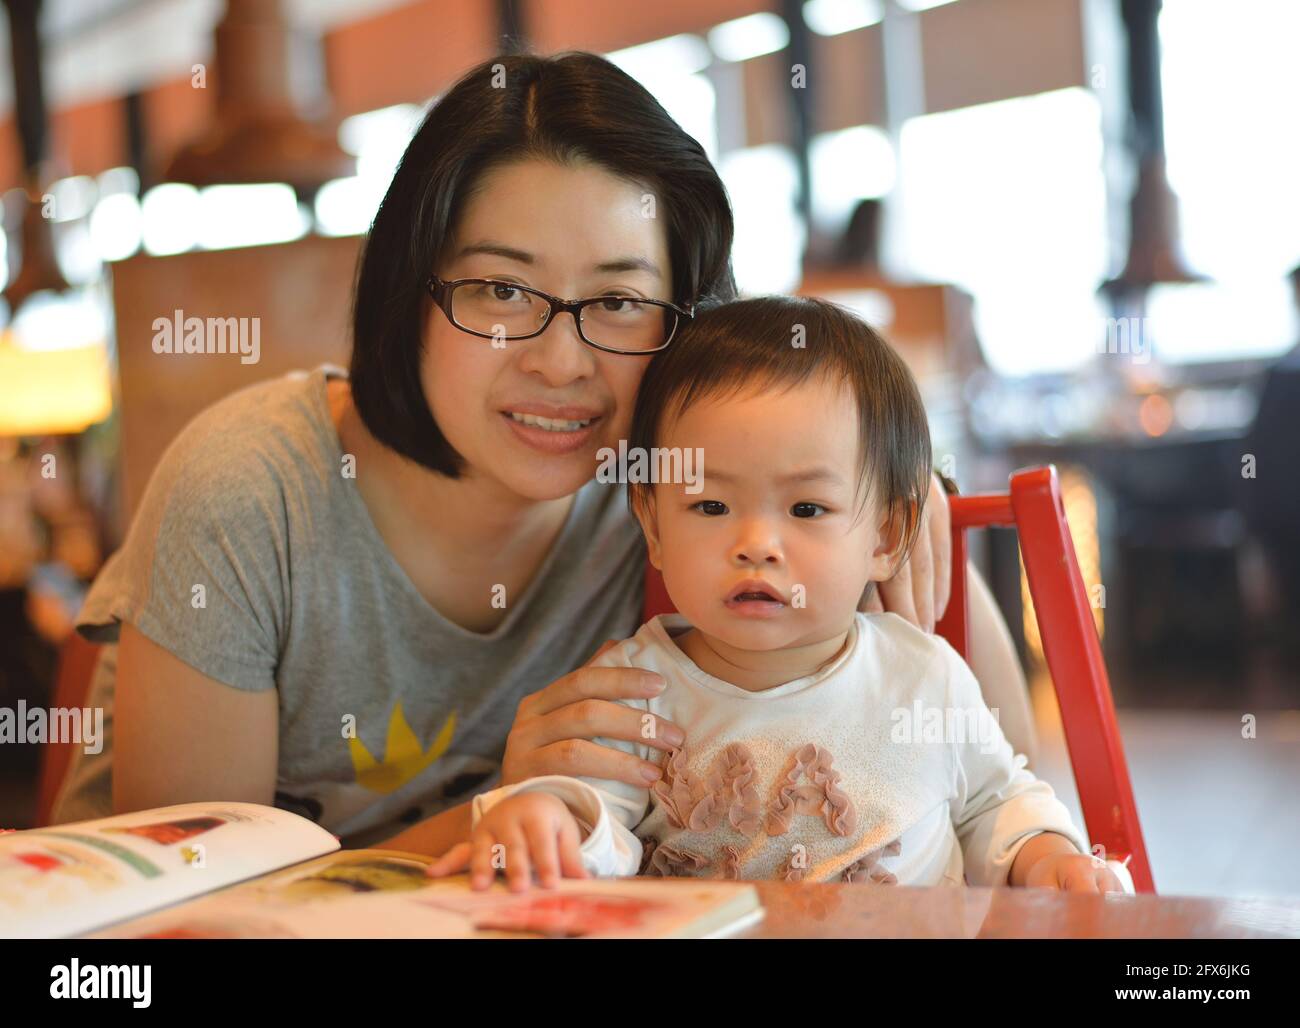 Belle mère asiatique et petite fille ensemble dans un restaurant, femme à lunettes. Banque D'Images